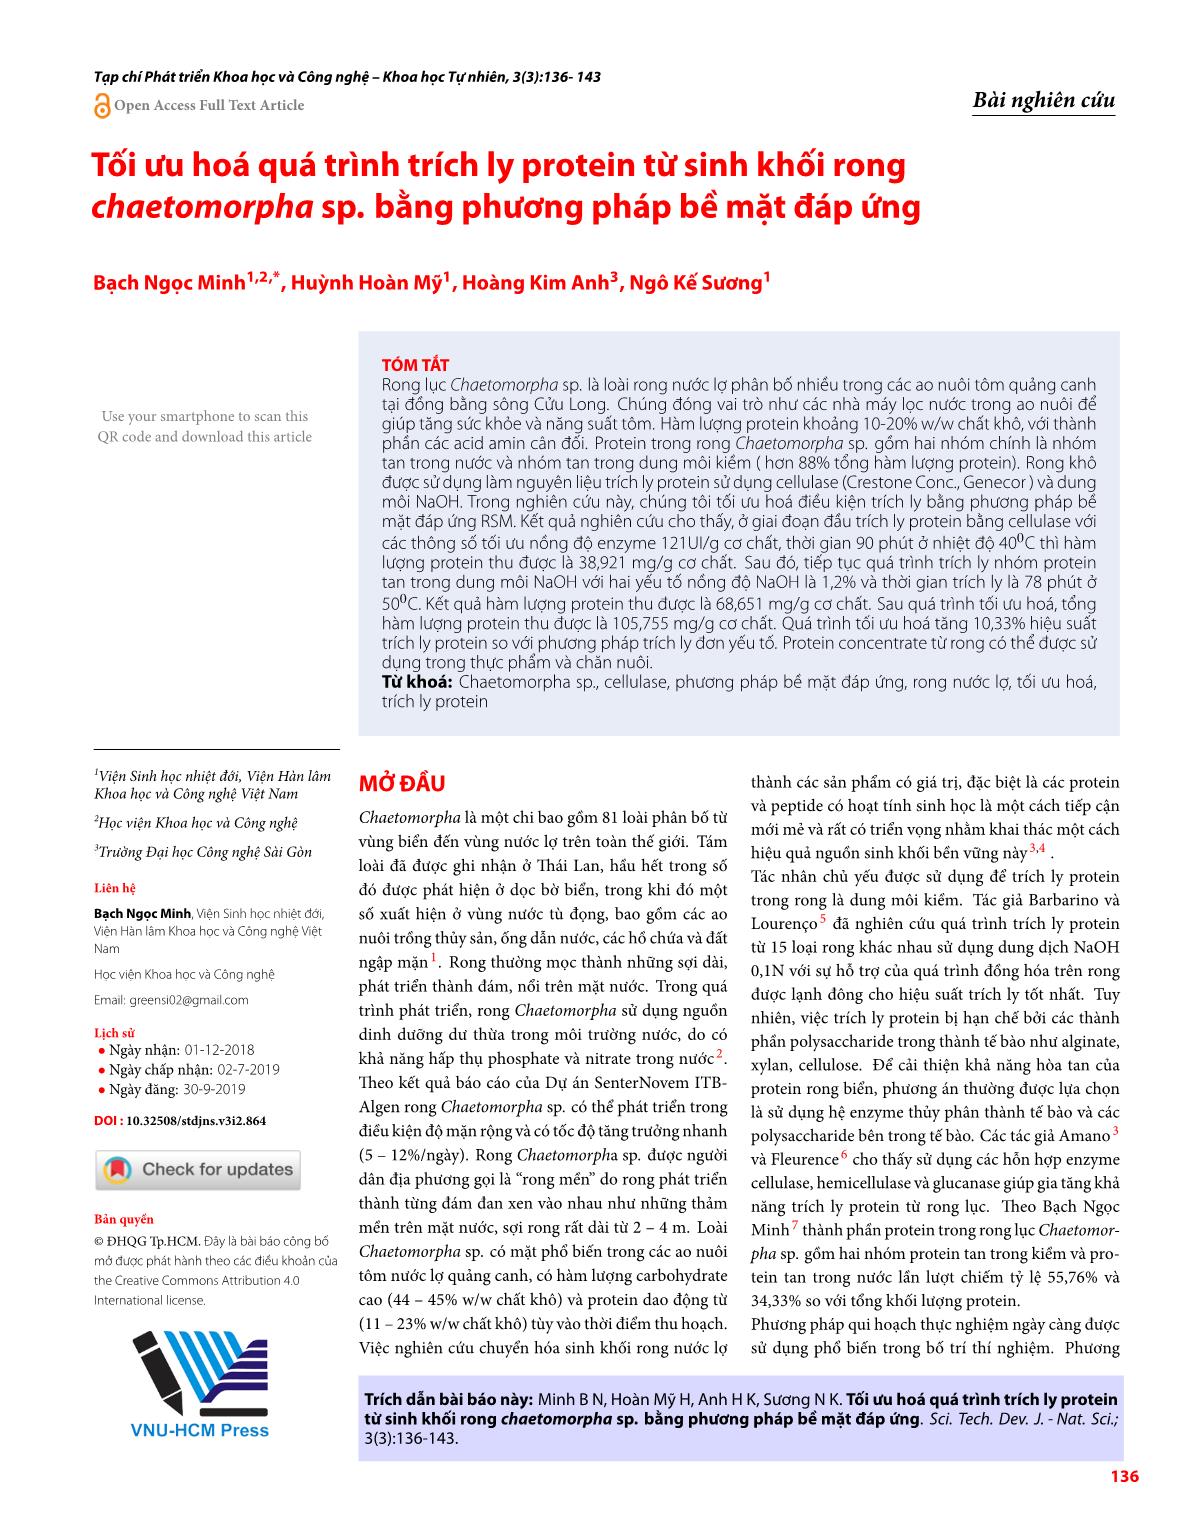 Tối ưu hoá quá trình trích ly protein từ sinh khối rong chaetomorpha sp. bằng phương pháp bề mặt đáp ứng trang 1